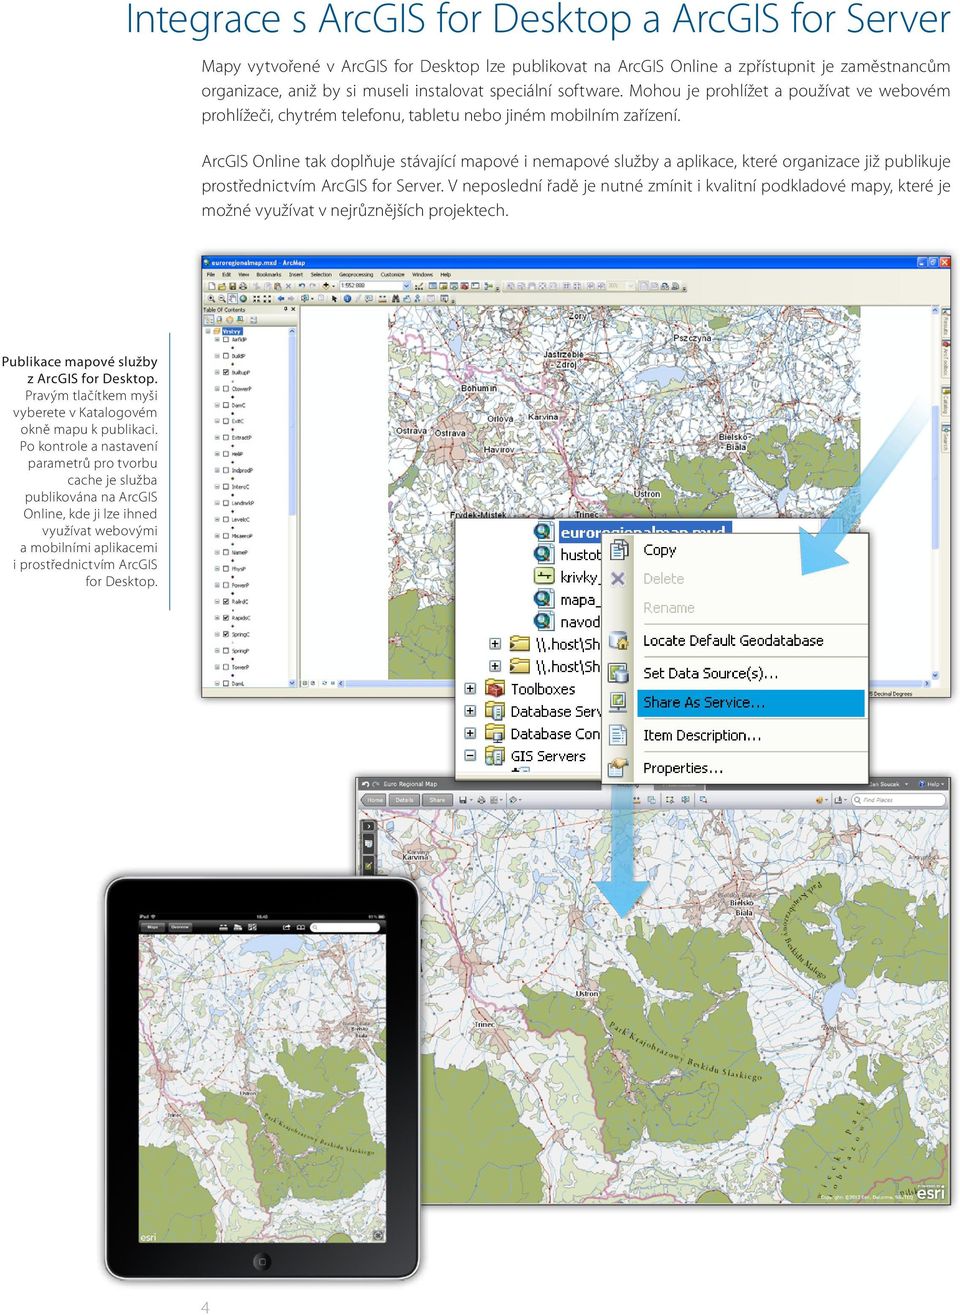 ArcGIS Online tak doplňuje stávající mapové i nemapové služby a aplikace, které organizace již publikuje prostřednictvím ArcGIS for Server.